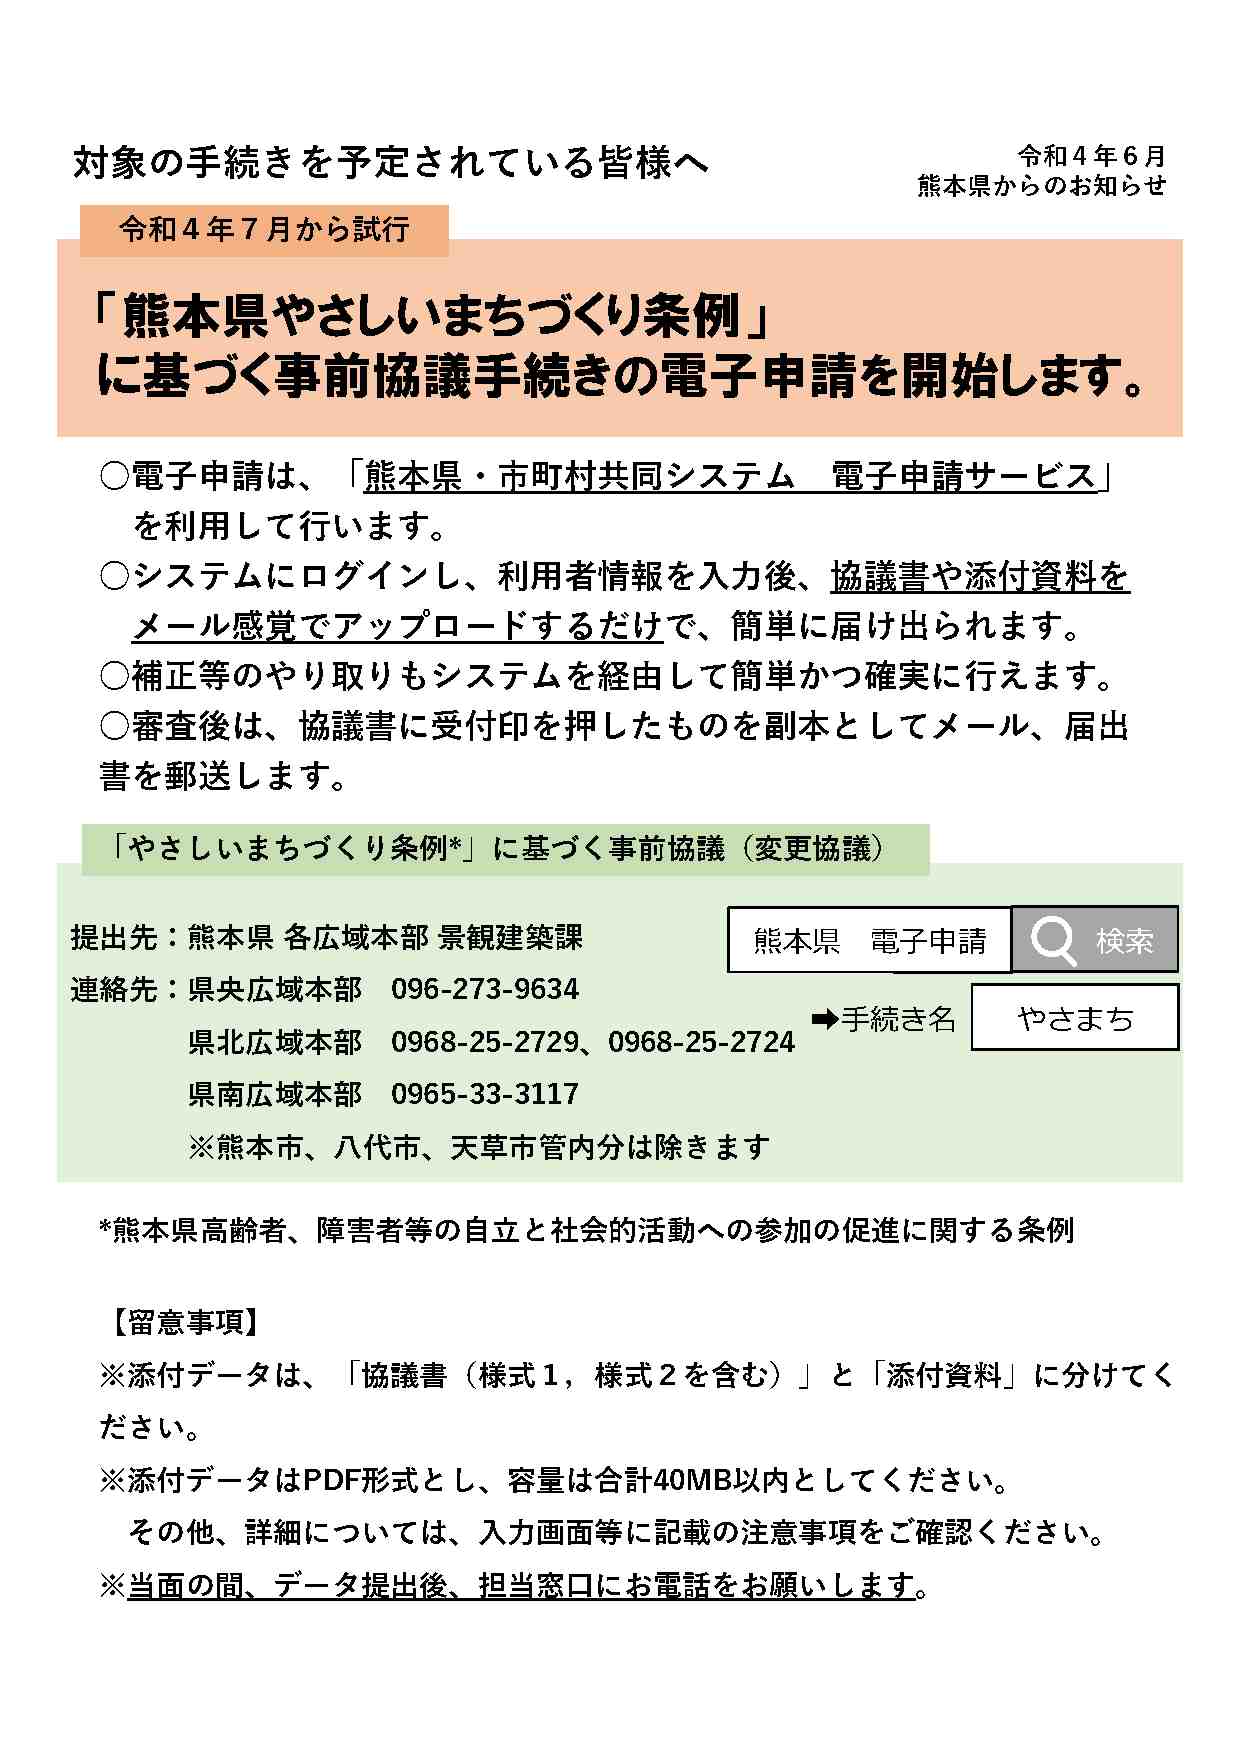 「熊本県やさしいまちづくり条例」に基づく事前協議手続きの電子申請を開始します。